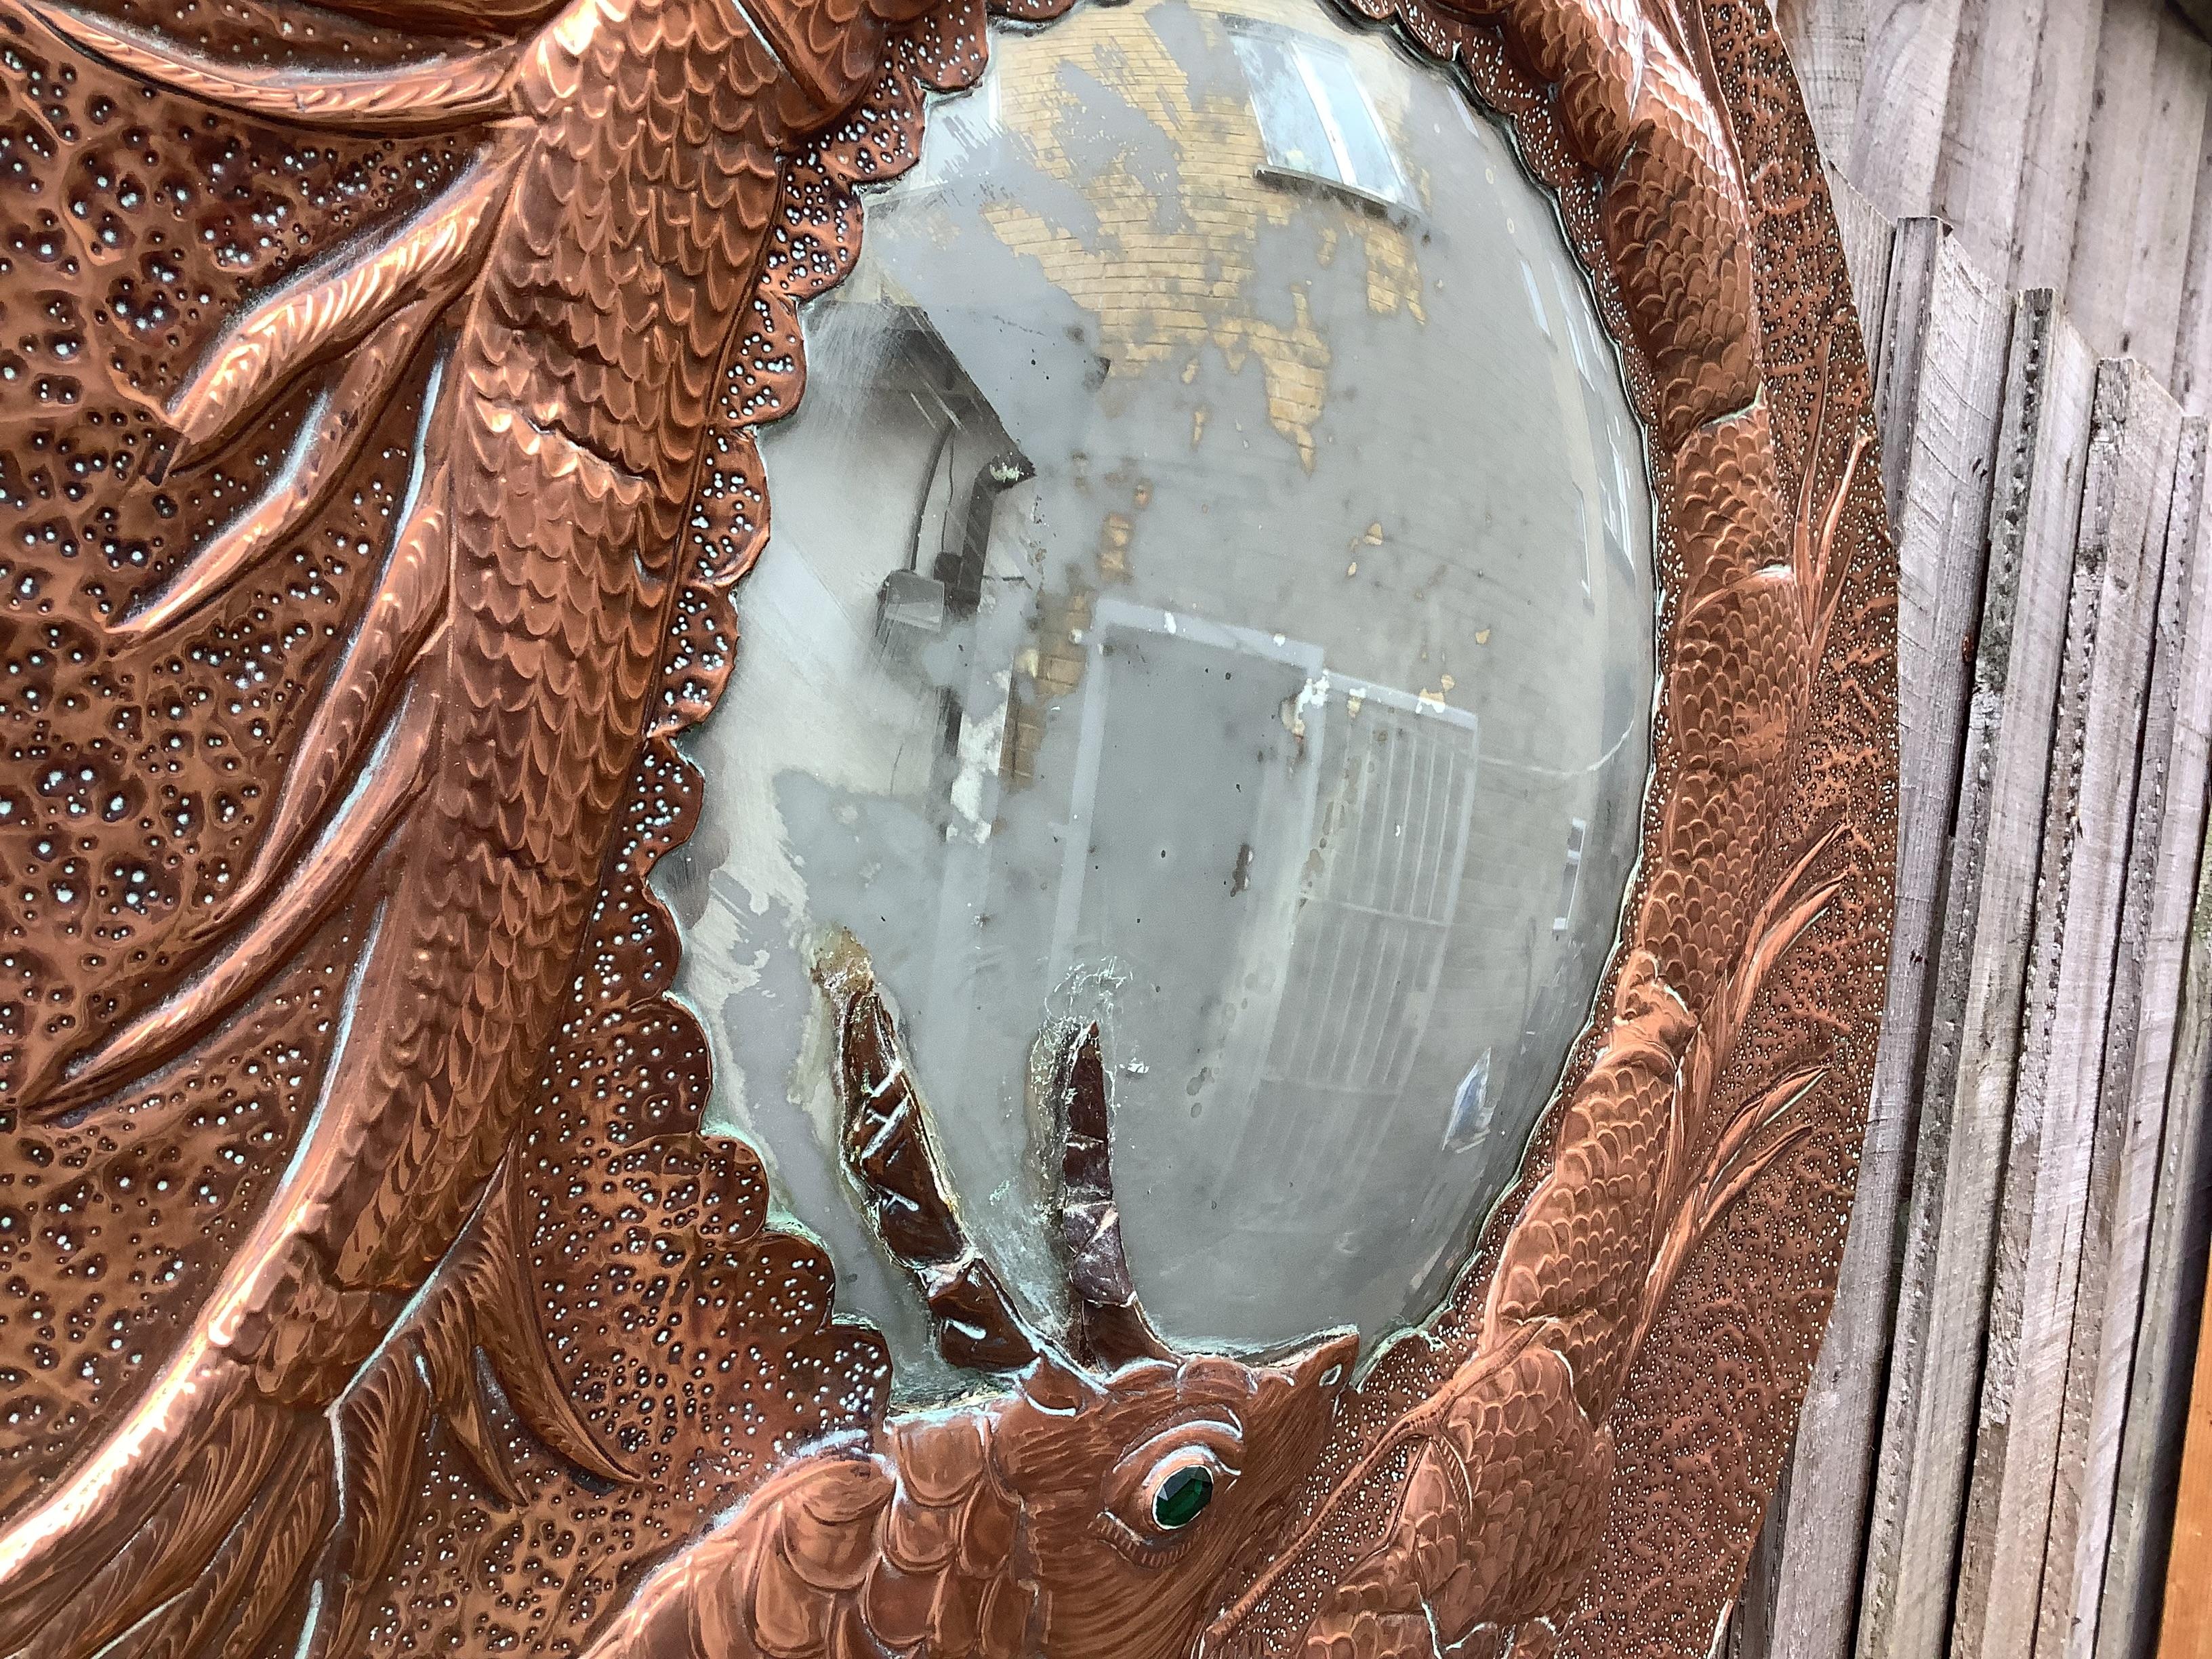 Miroir en cuivre de belle facture avec un décor de dragon 
le miroir actuel est usé et constitue un superbe objet de décoration
Le miroir est signé et daté Cc Anthony de Lucian